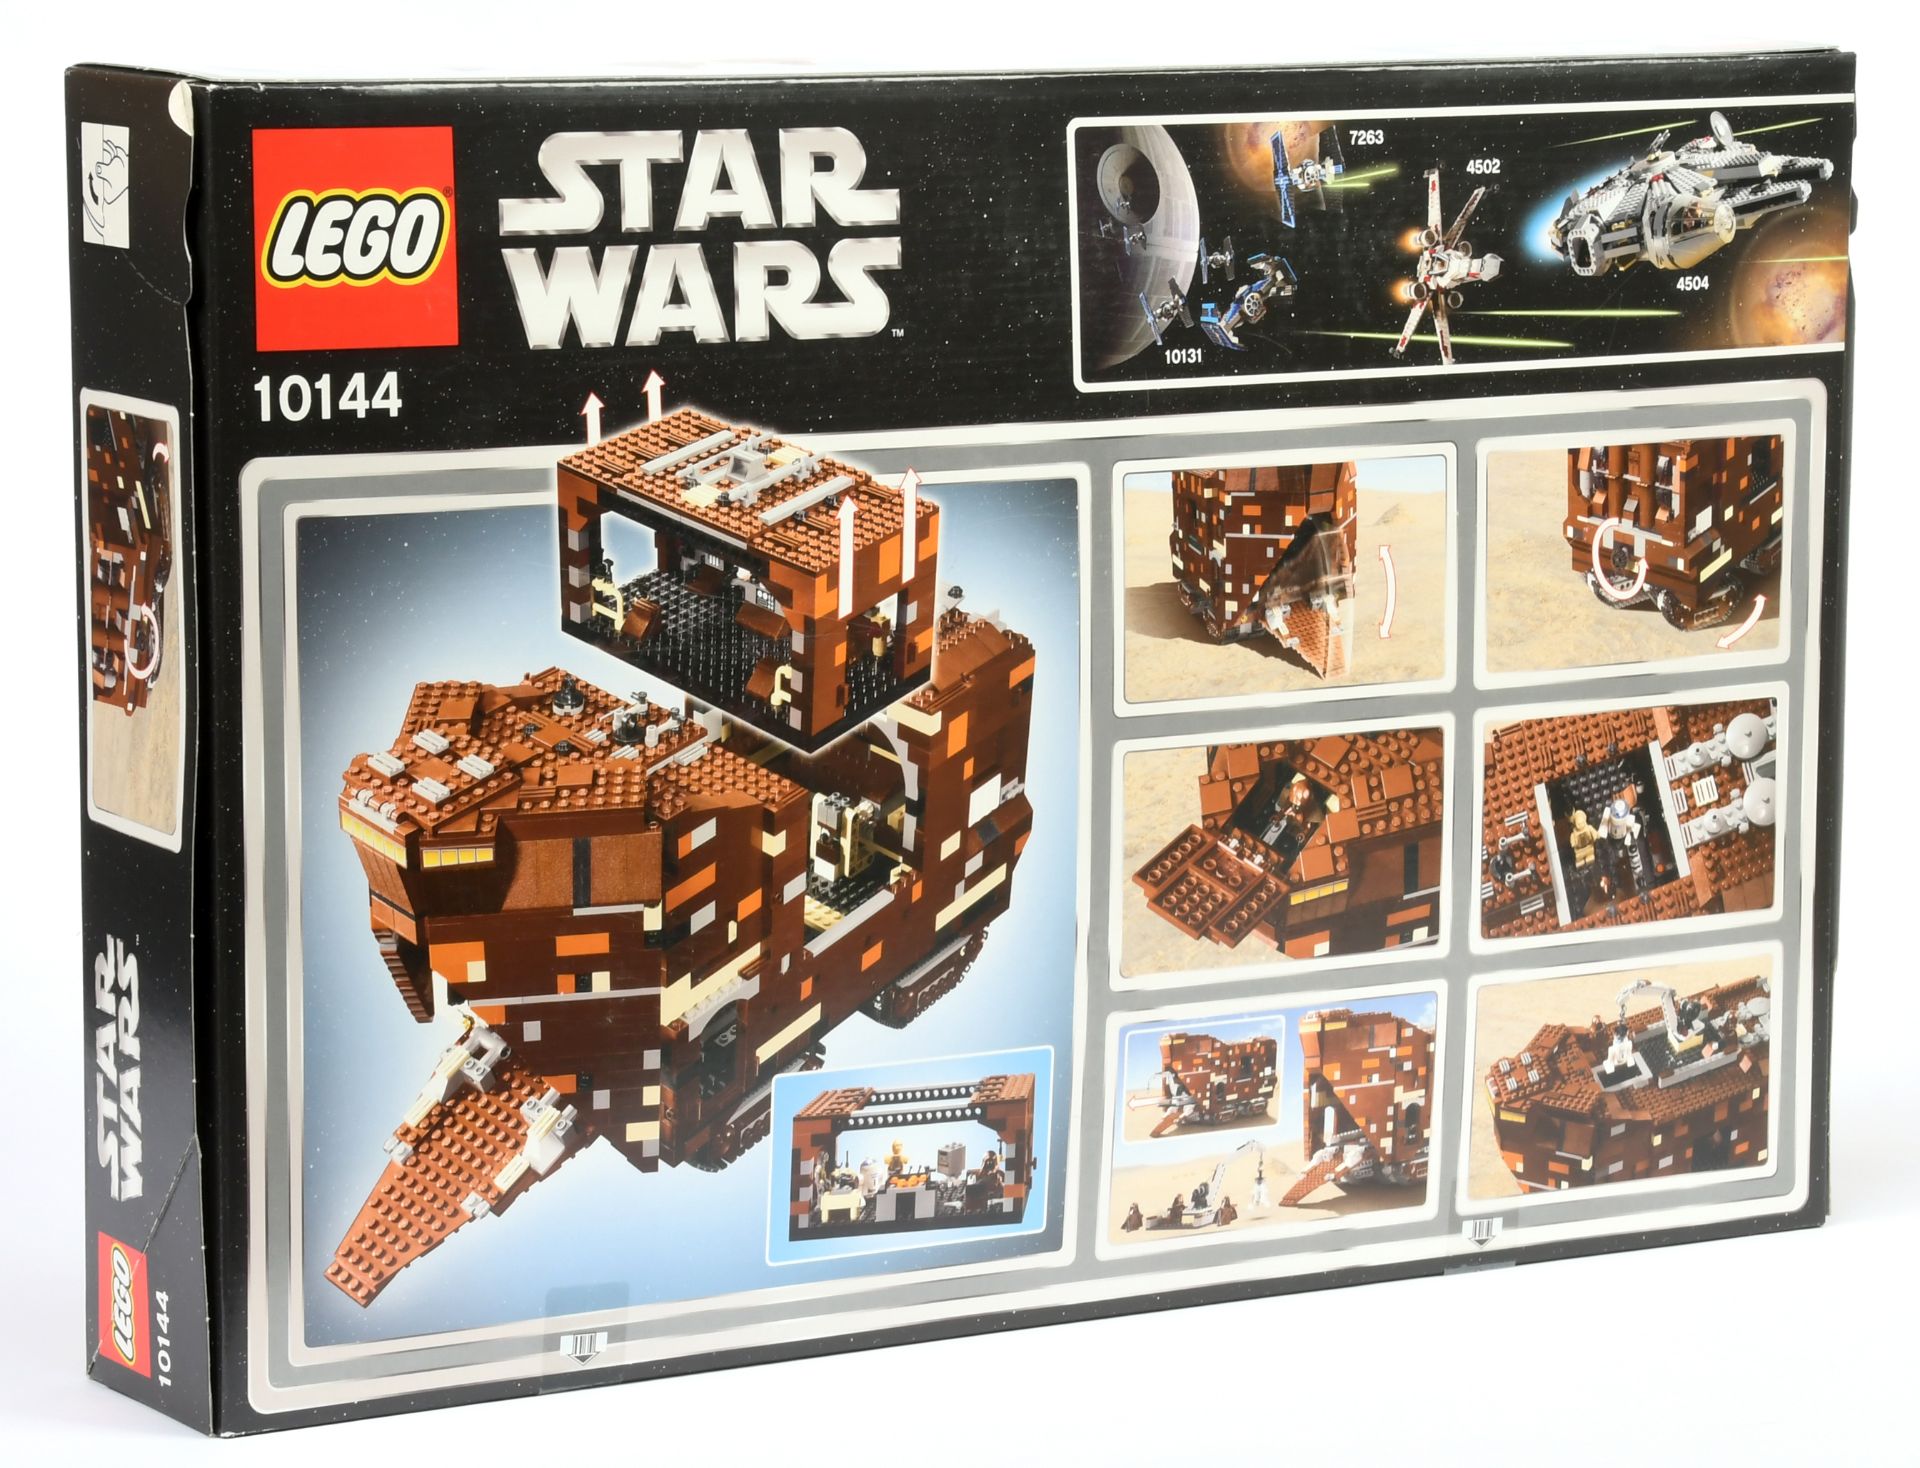 Lego Star Wars 10144 Sandcrawler Star - Wars Original Trilogy Edition - 2005 Issue, within Near M... - Bild 2 aus 2